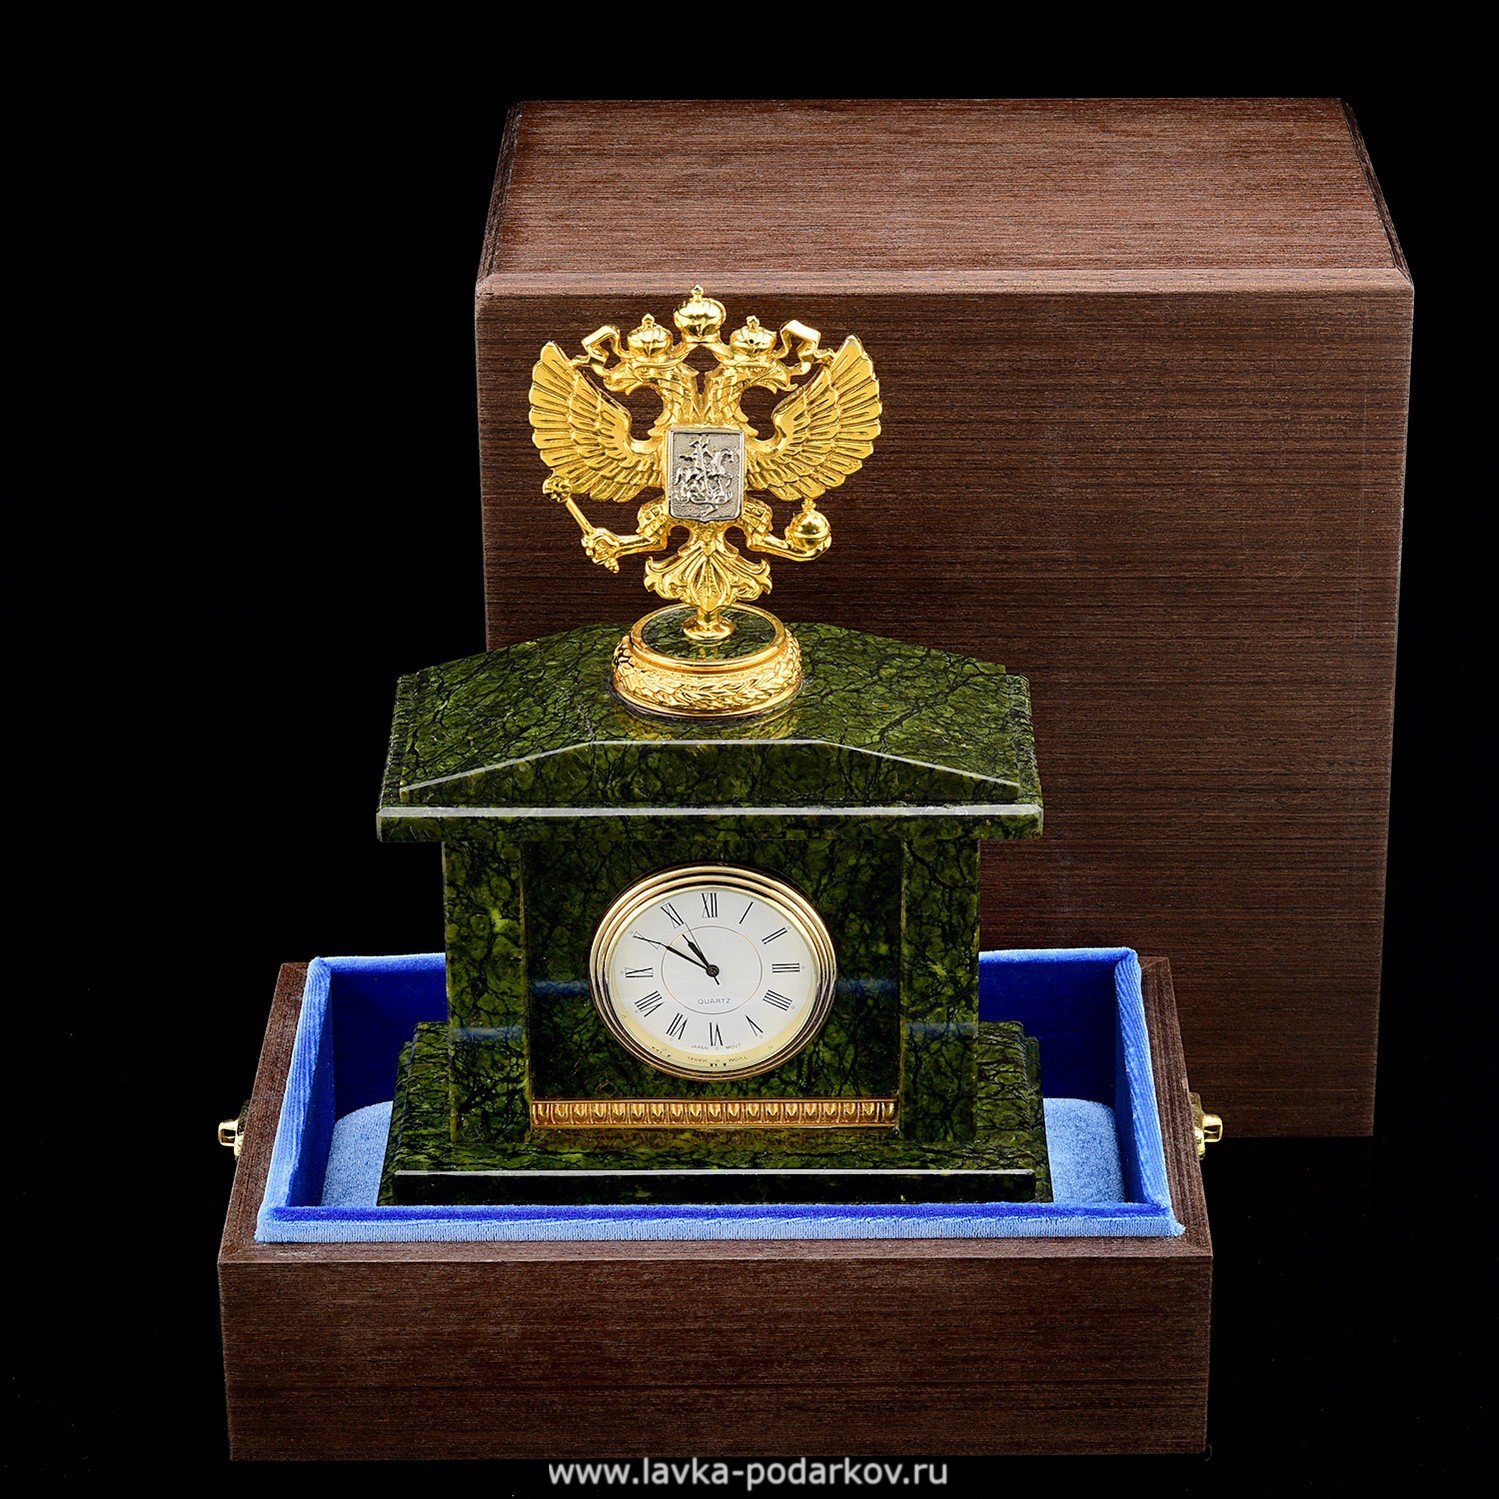 Магазины часов златоуст. Каминные часы из змеевика. Часы настольные Златоуст. Часы Златоустовские металлические. Российские часы позолоченные с гербом.